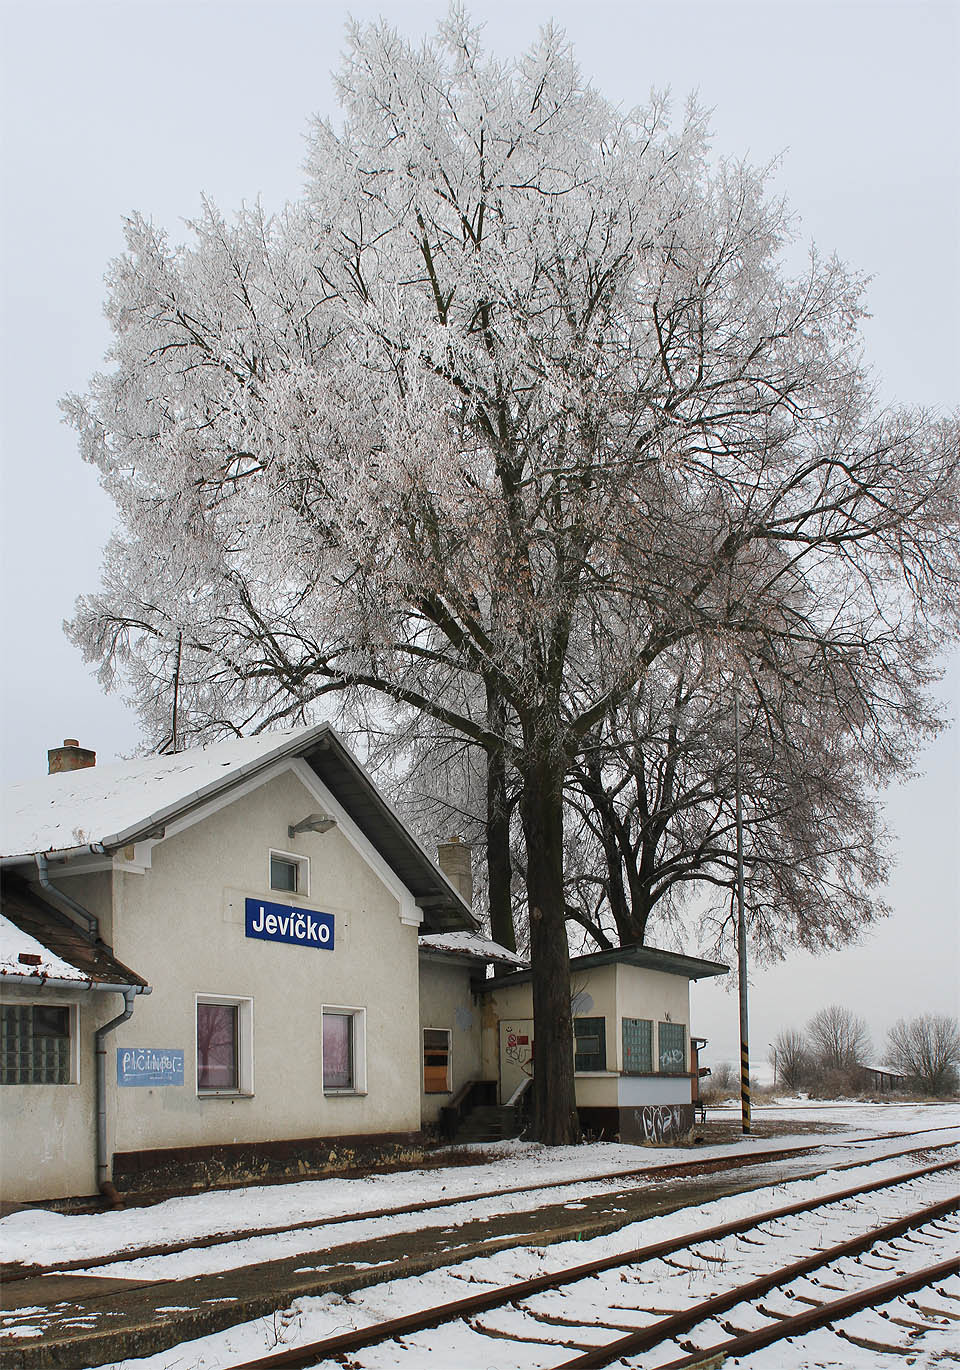 Málokterá železniční stanice se může pochlubit tak pěknými stromy, jaké poskytují stín a ochranu výpravní budově v Jevíčku.